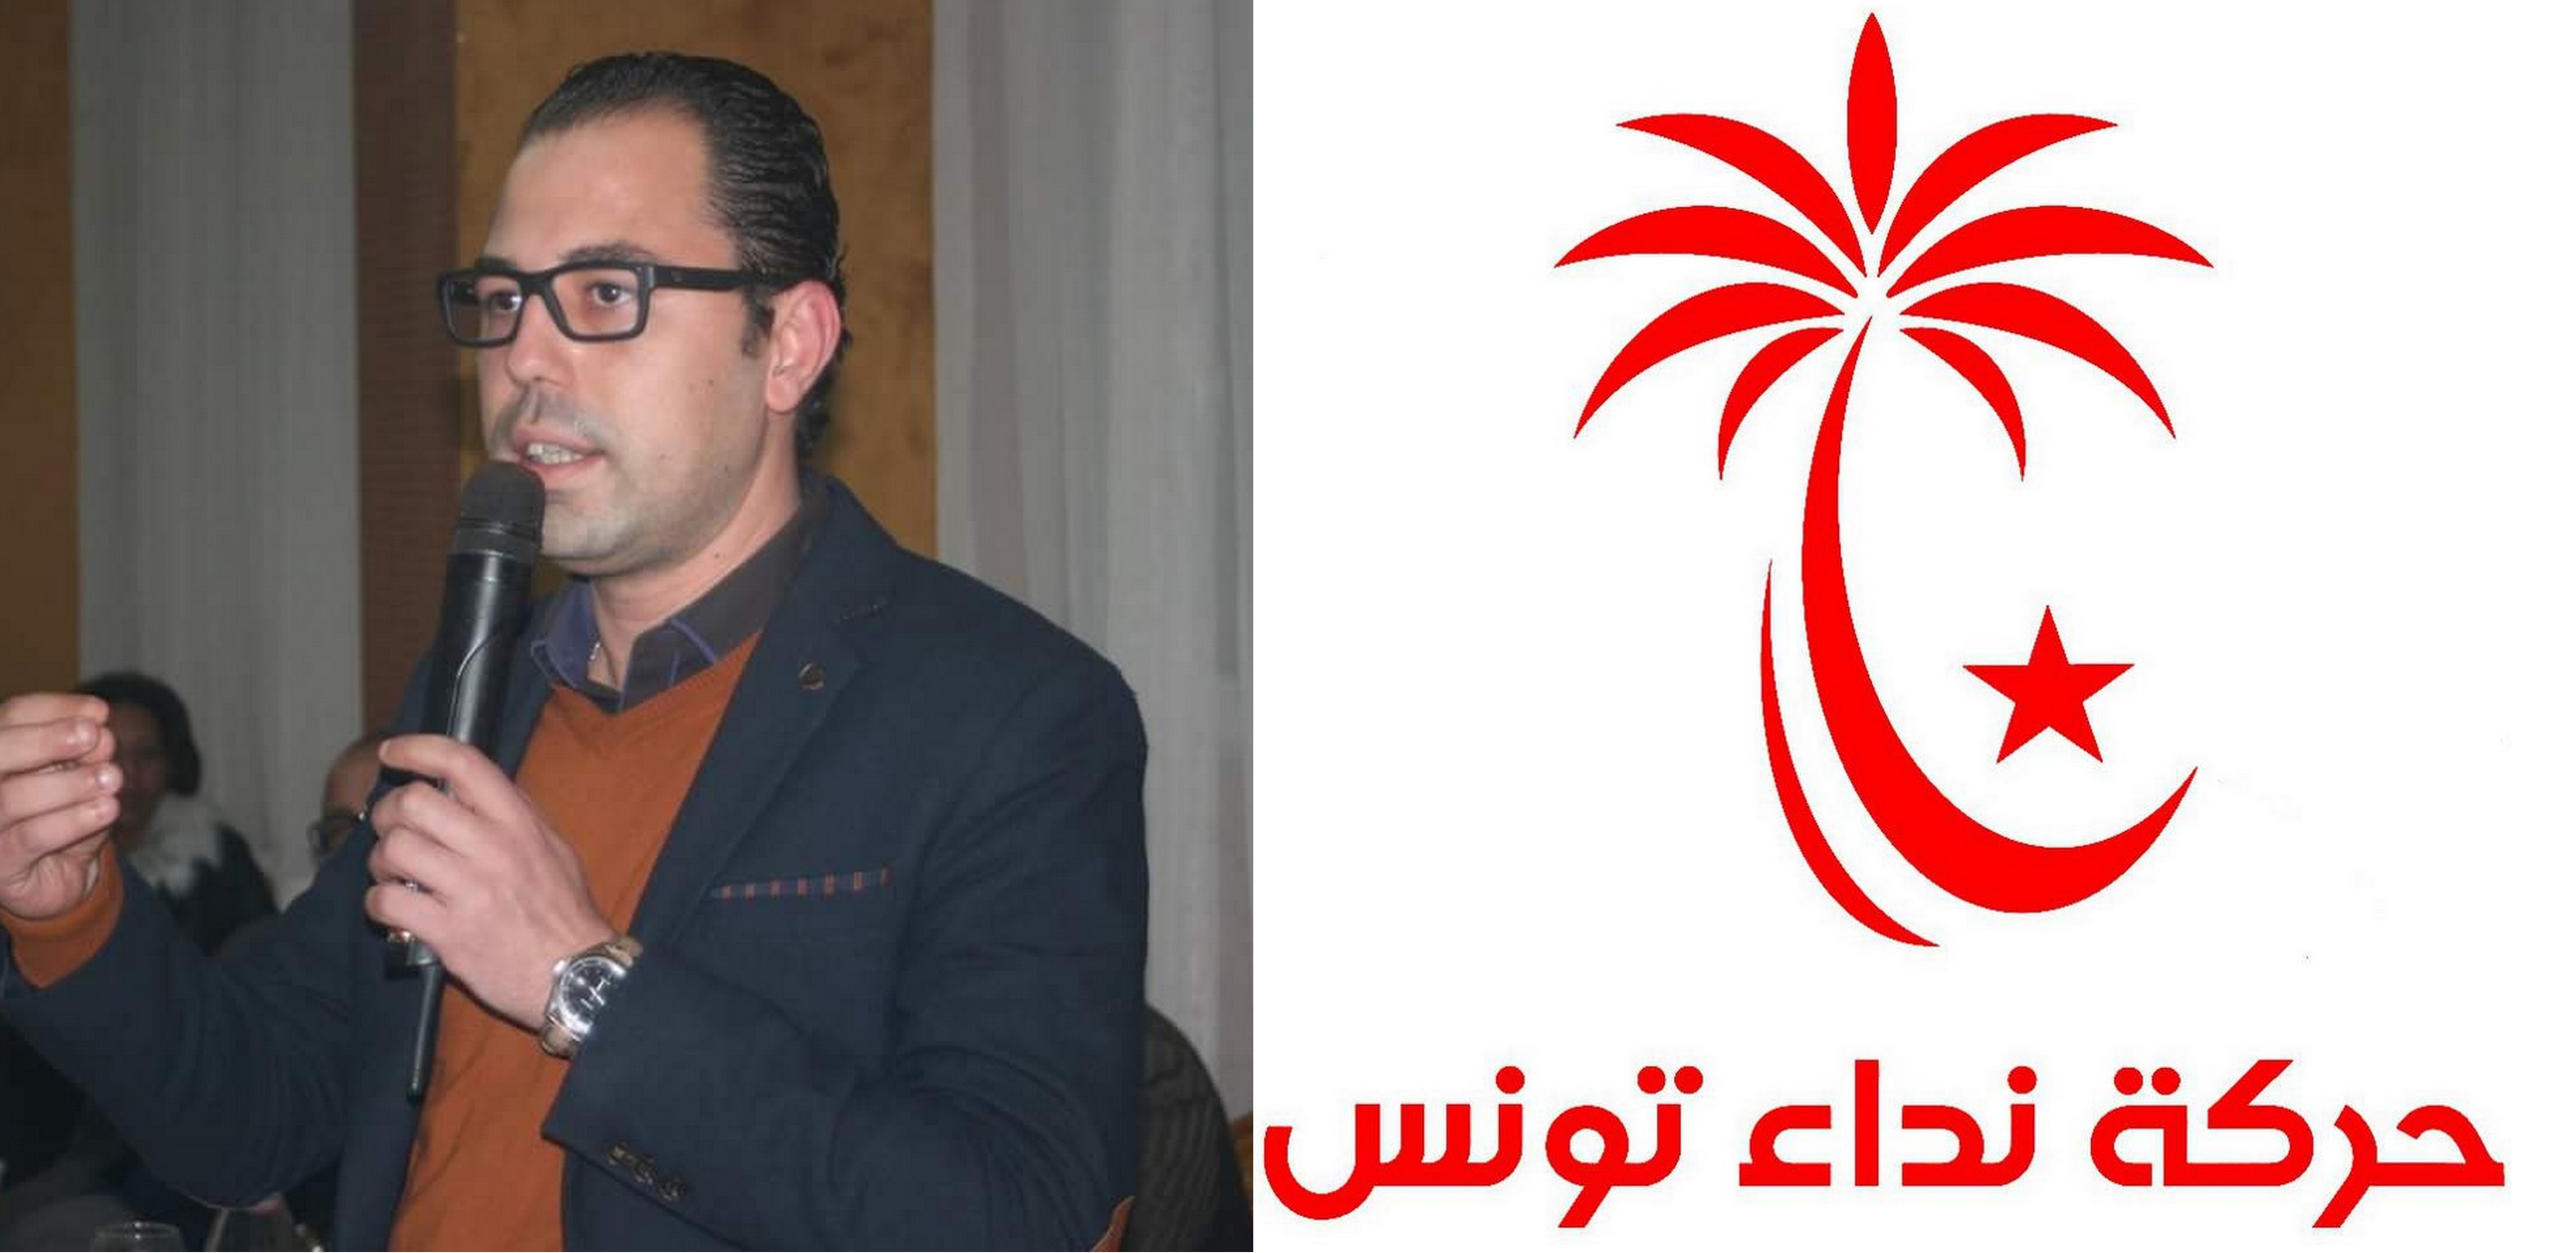 تحضيرات واستعدادات مكثفة للتنسيقيات الجهوية لنداء تونس تمهيدا للانتخابات البلدية